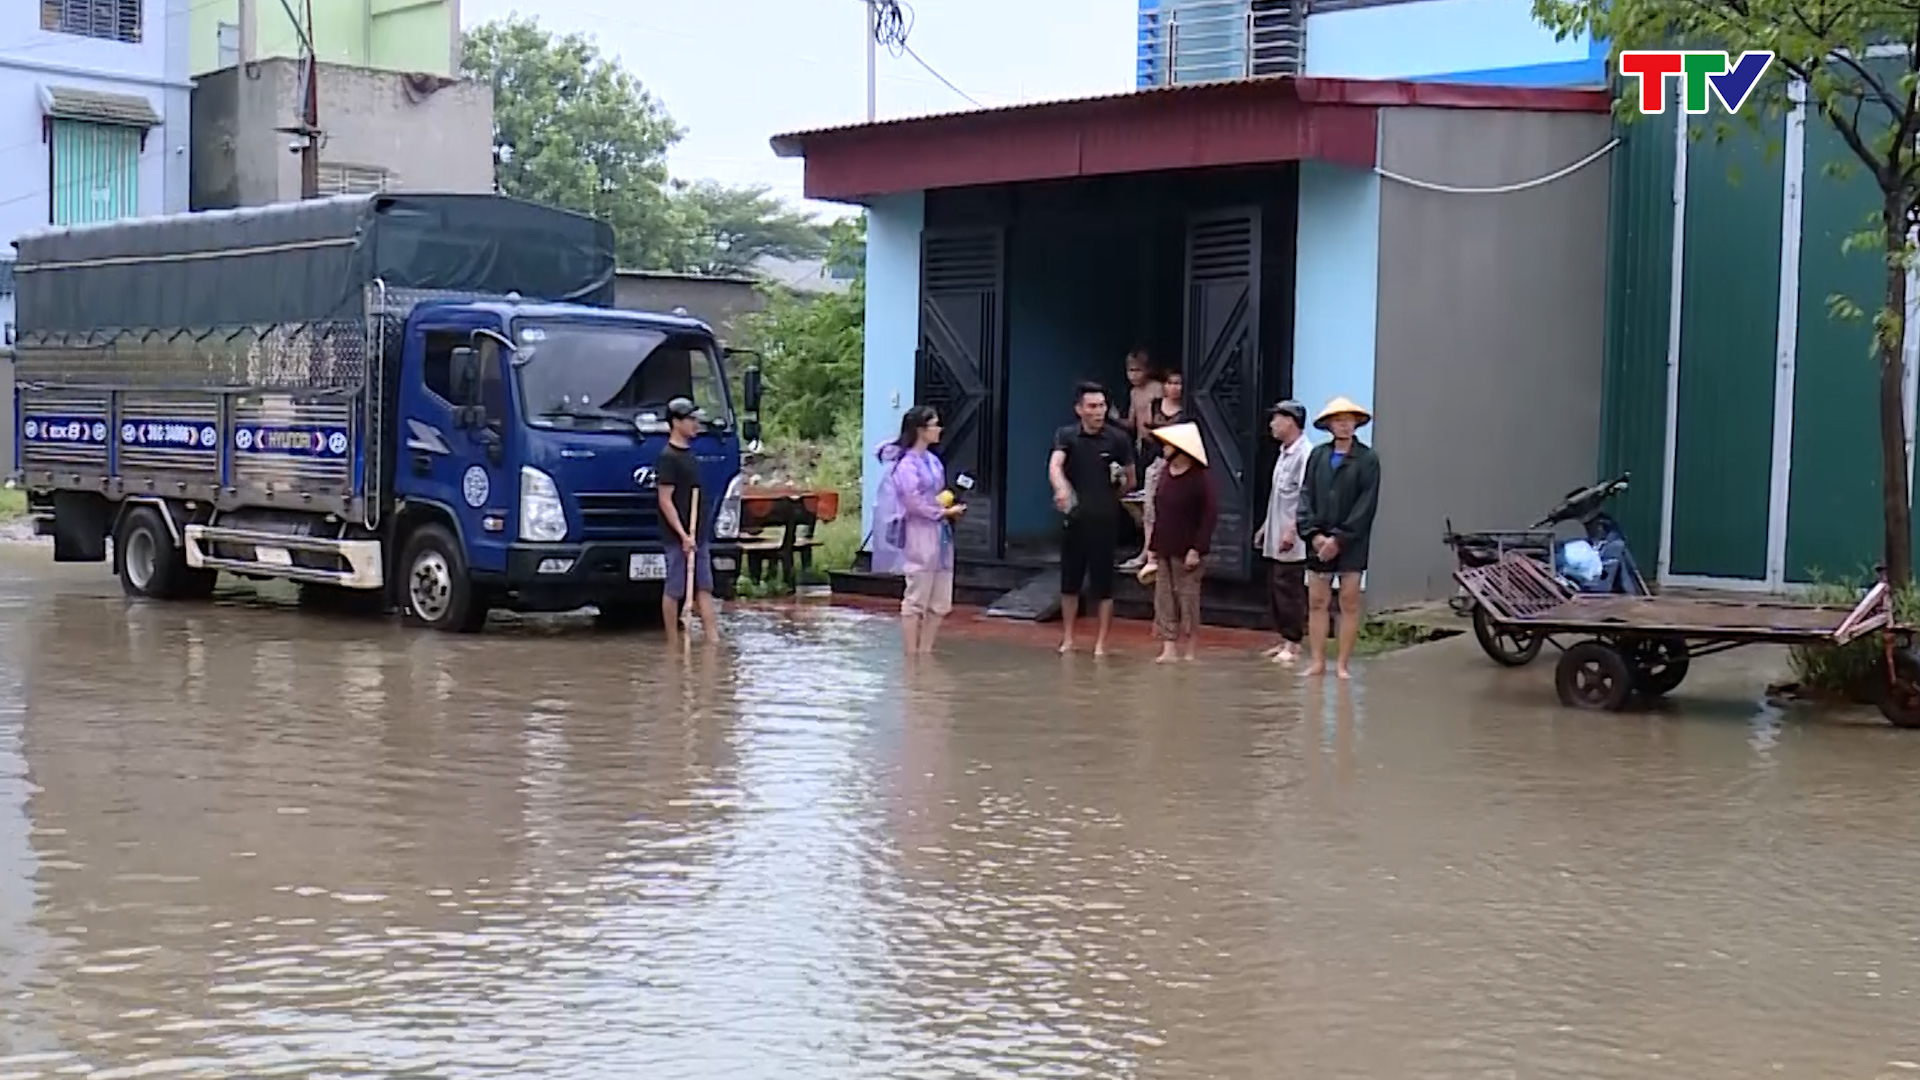 Cần sớm giải quyết tình trạng ngập lụt ở Mặt bằng quy hoạch khu phố 4, phường Quảng Hưng, thành phố Thanh Hóa - Ảnh 7.